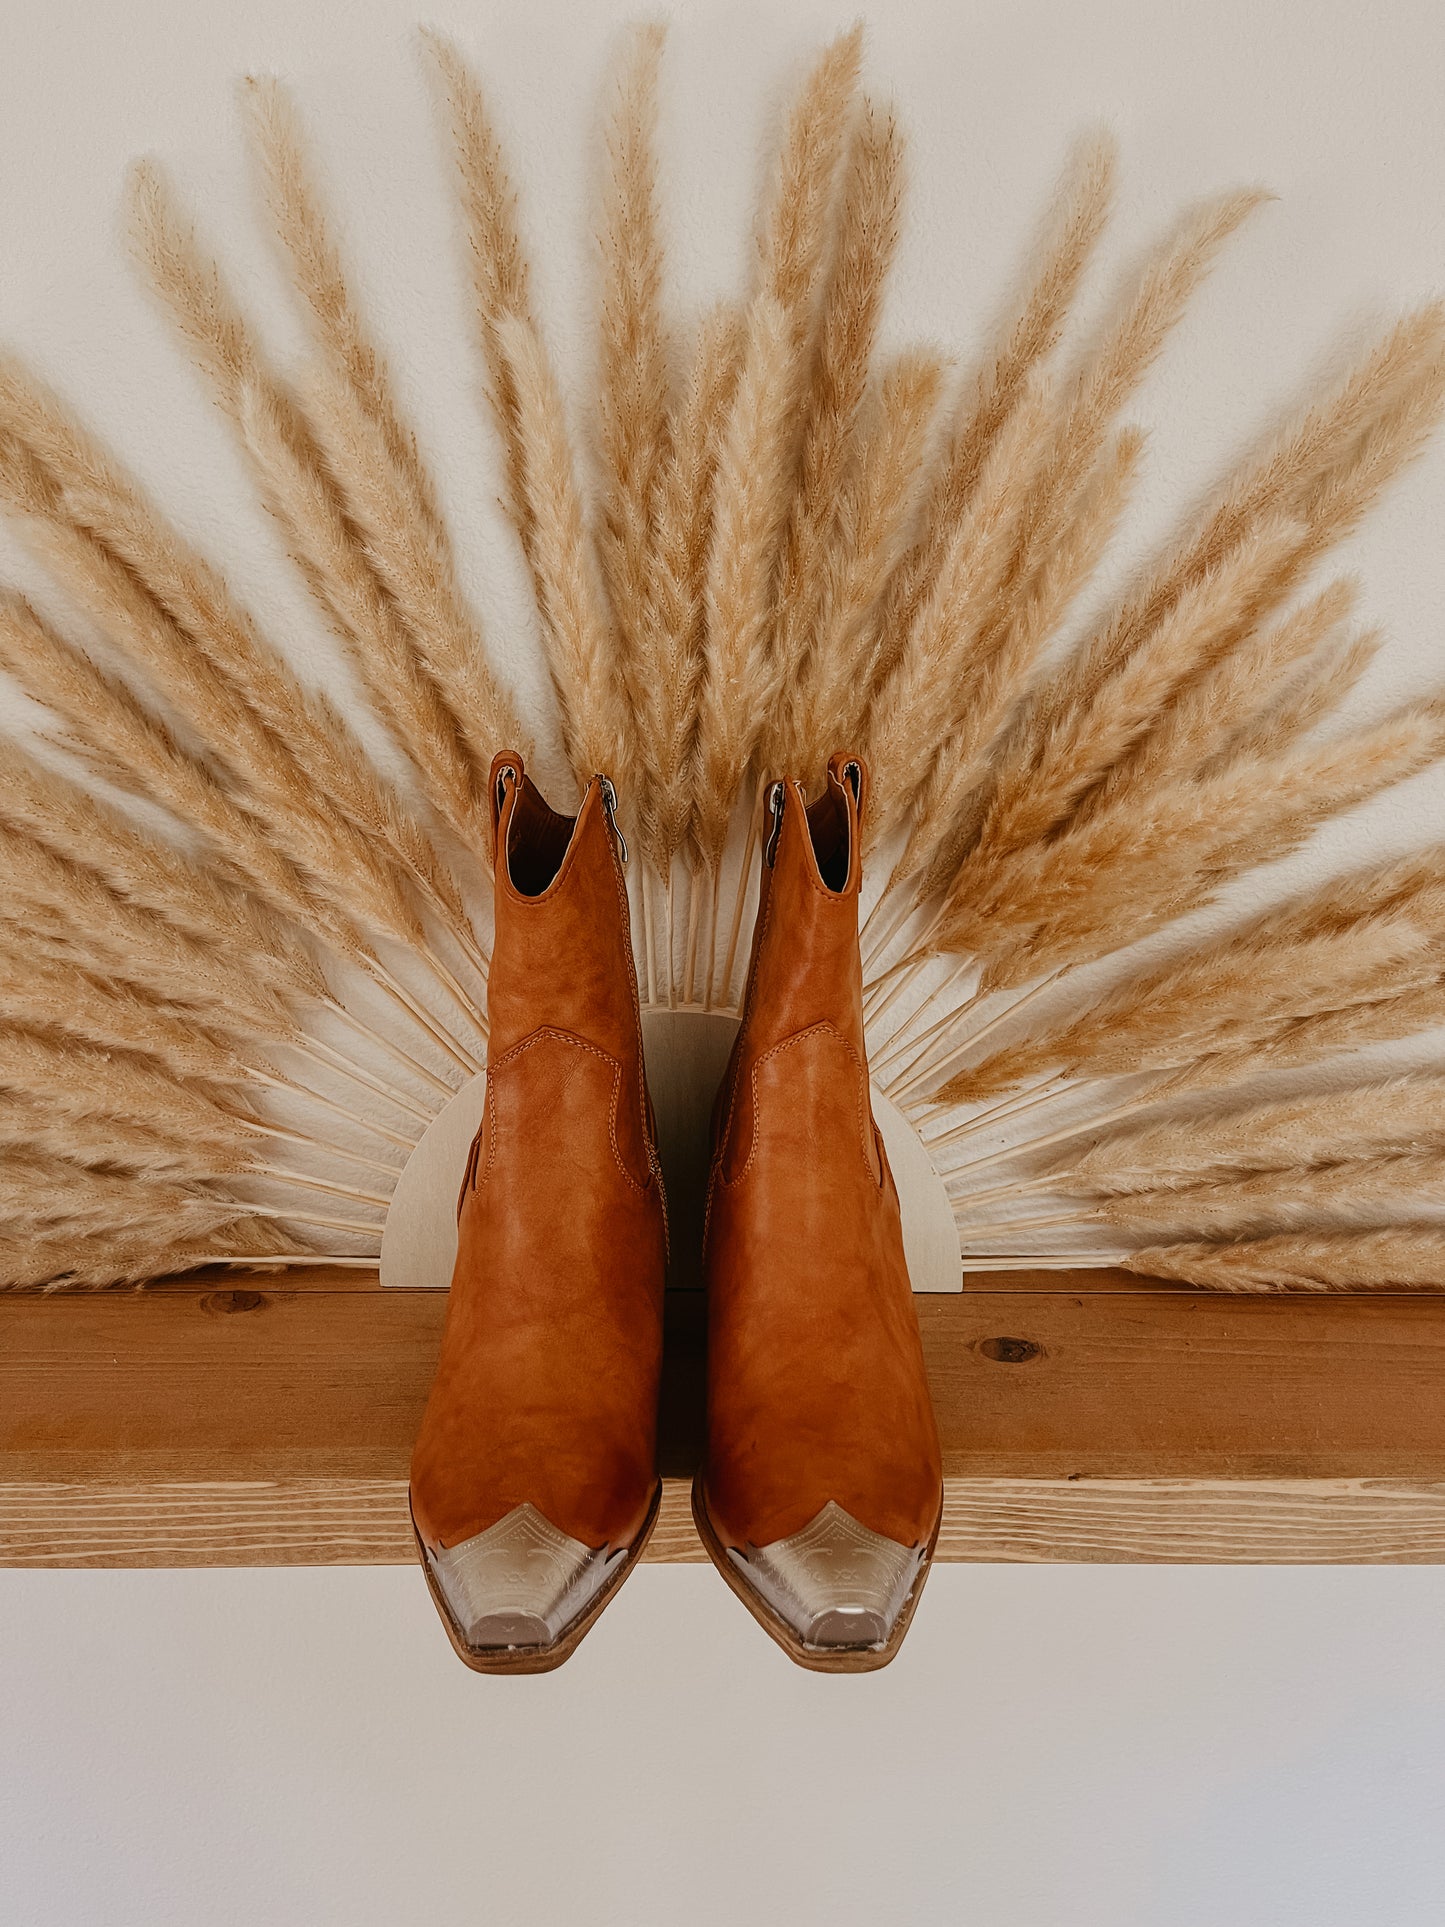 Dakota Western Boots in Cognac - FINAL SALE